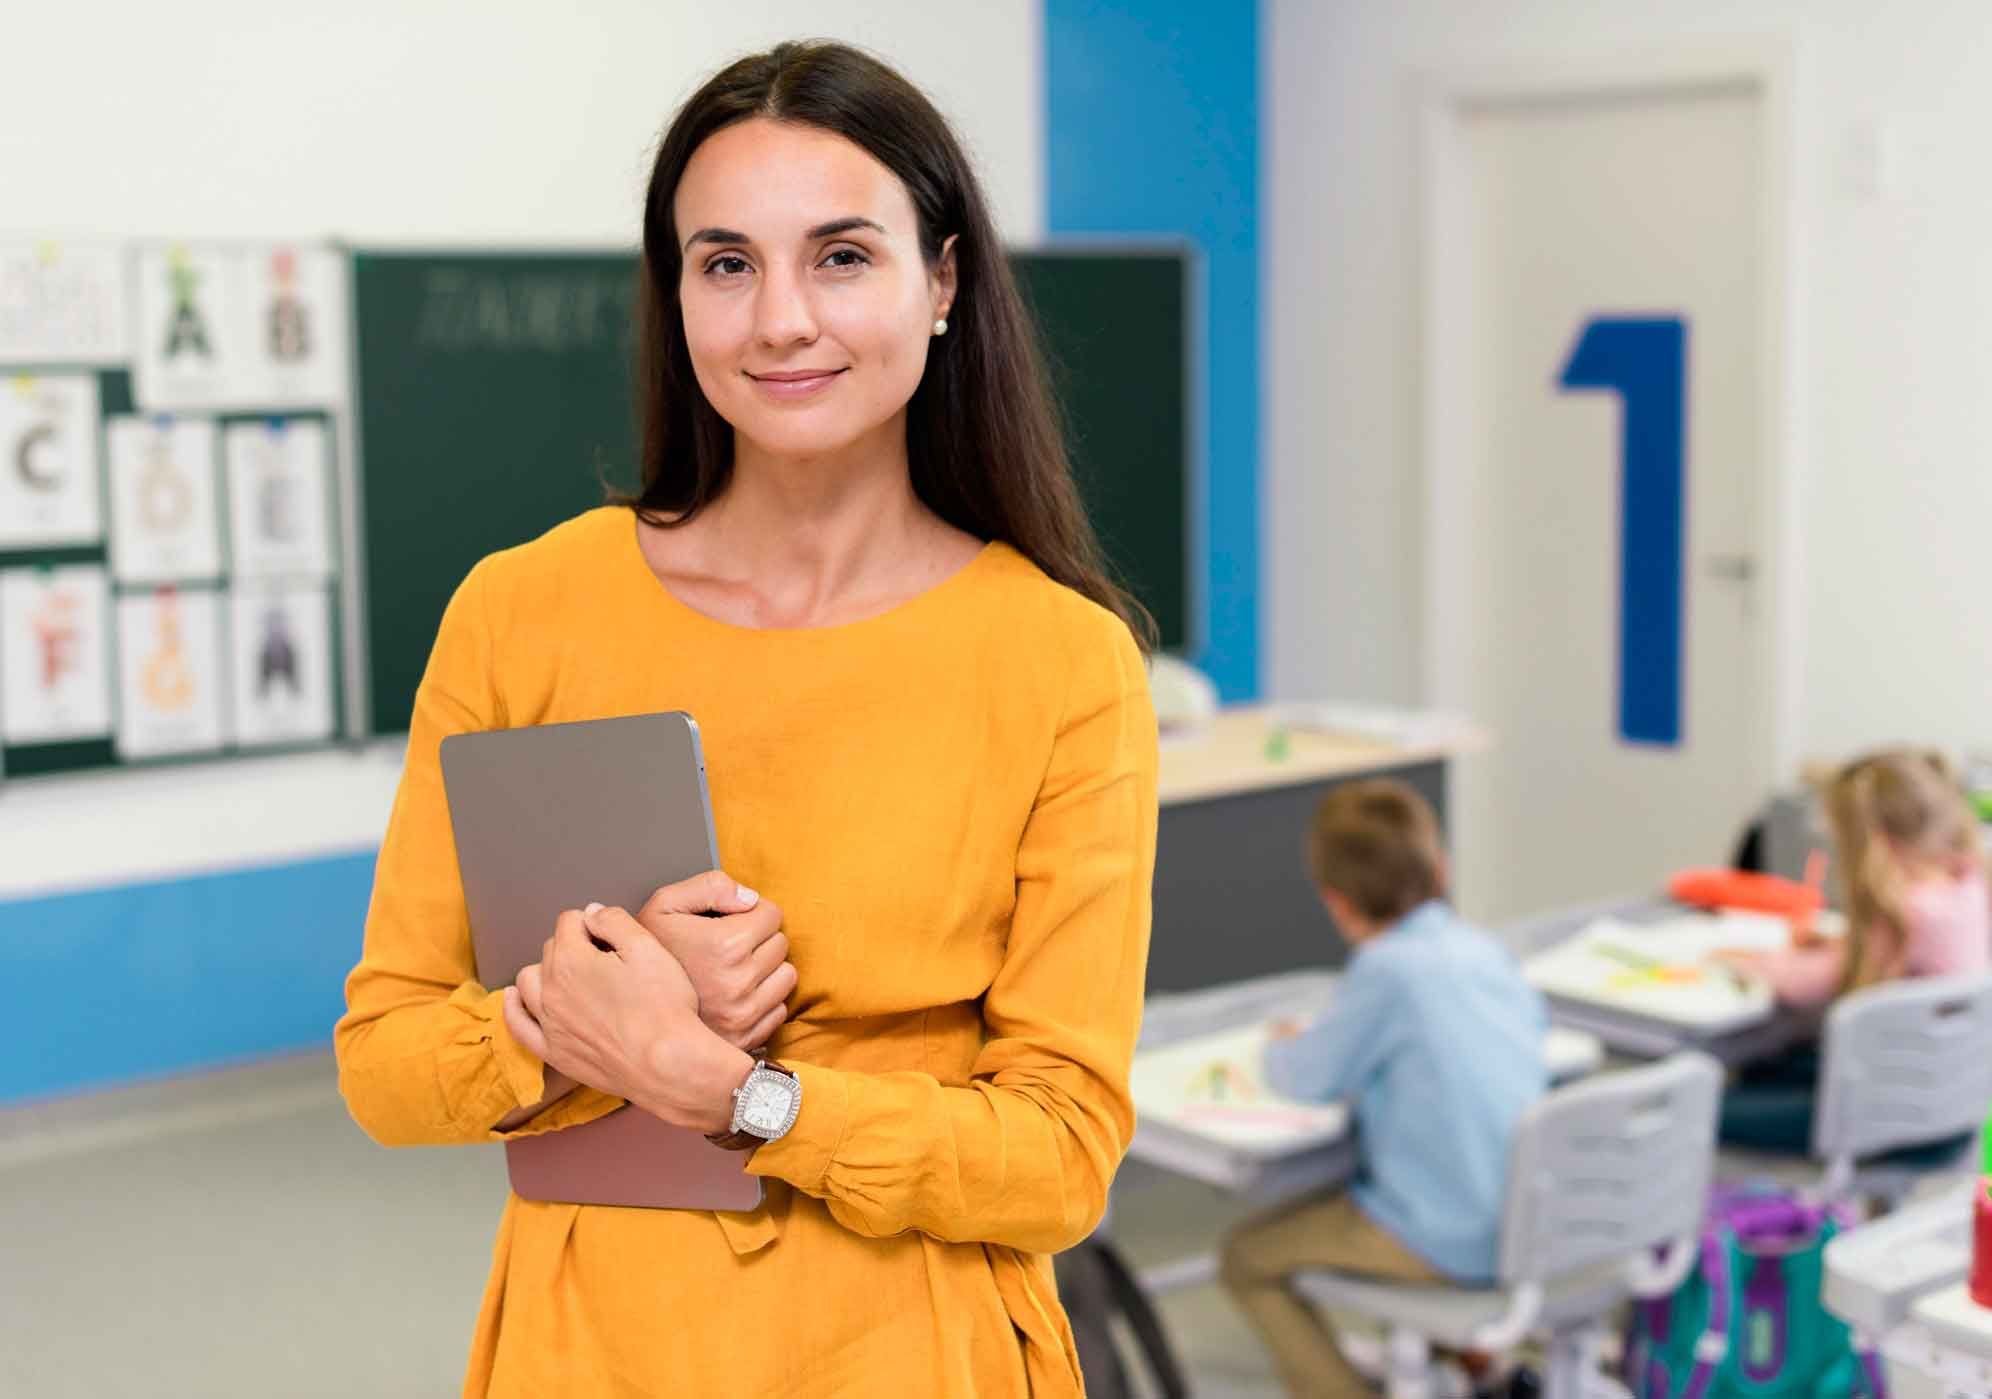 Чекліст крутого вчителя: 10 фішок, які варто підготувати перед новим навчальним роком - Україна новини - Освіта